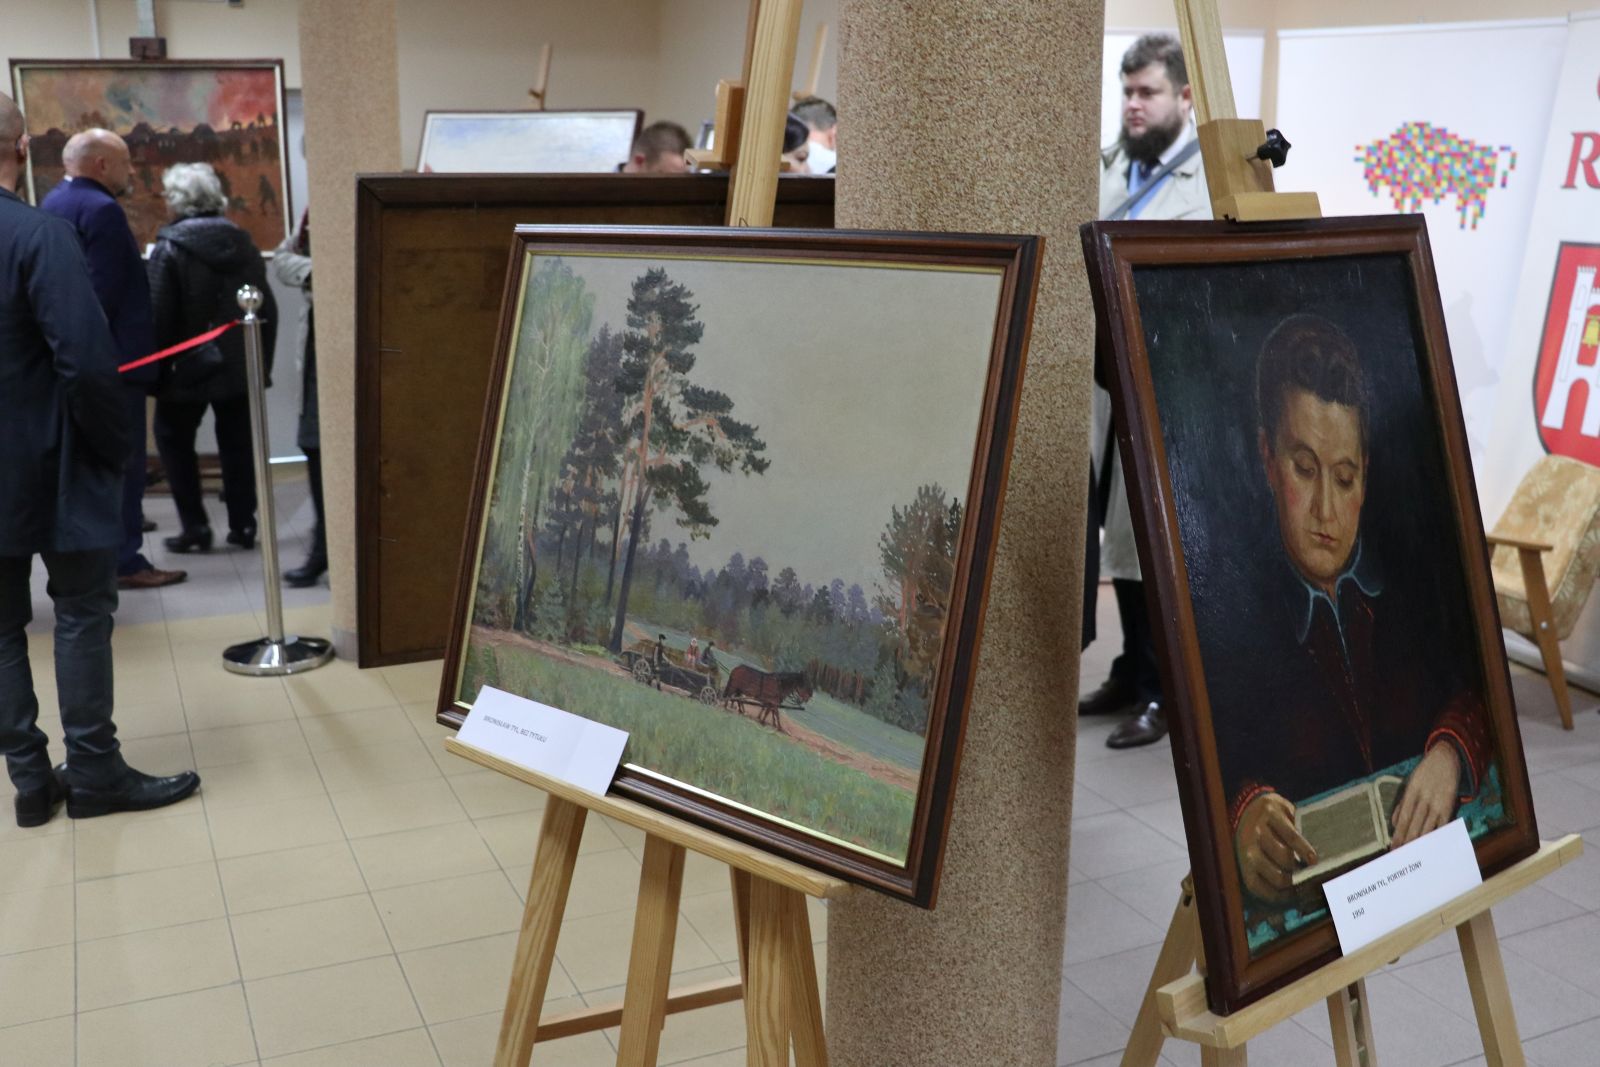 Wystawa dwóch obrazów. Obraz z lewej strony prezentuje trzy osoby siedzące w powozie ciągniętym przez konia na tle lasów. Na obrazie z prawej strony namalowany został portret kobiety zamyślonej notującej piórem na księdze.